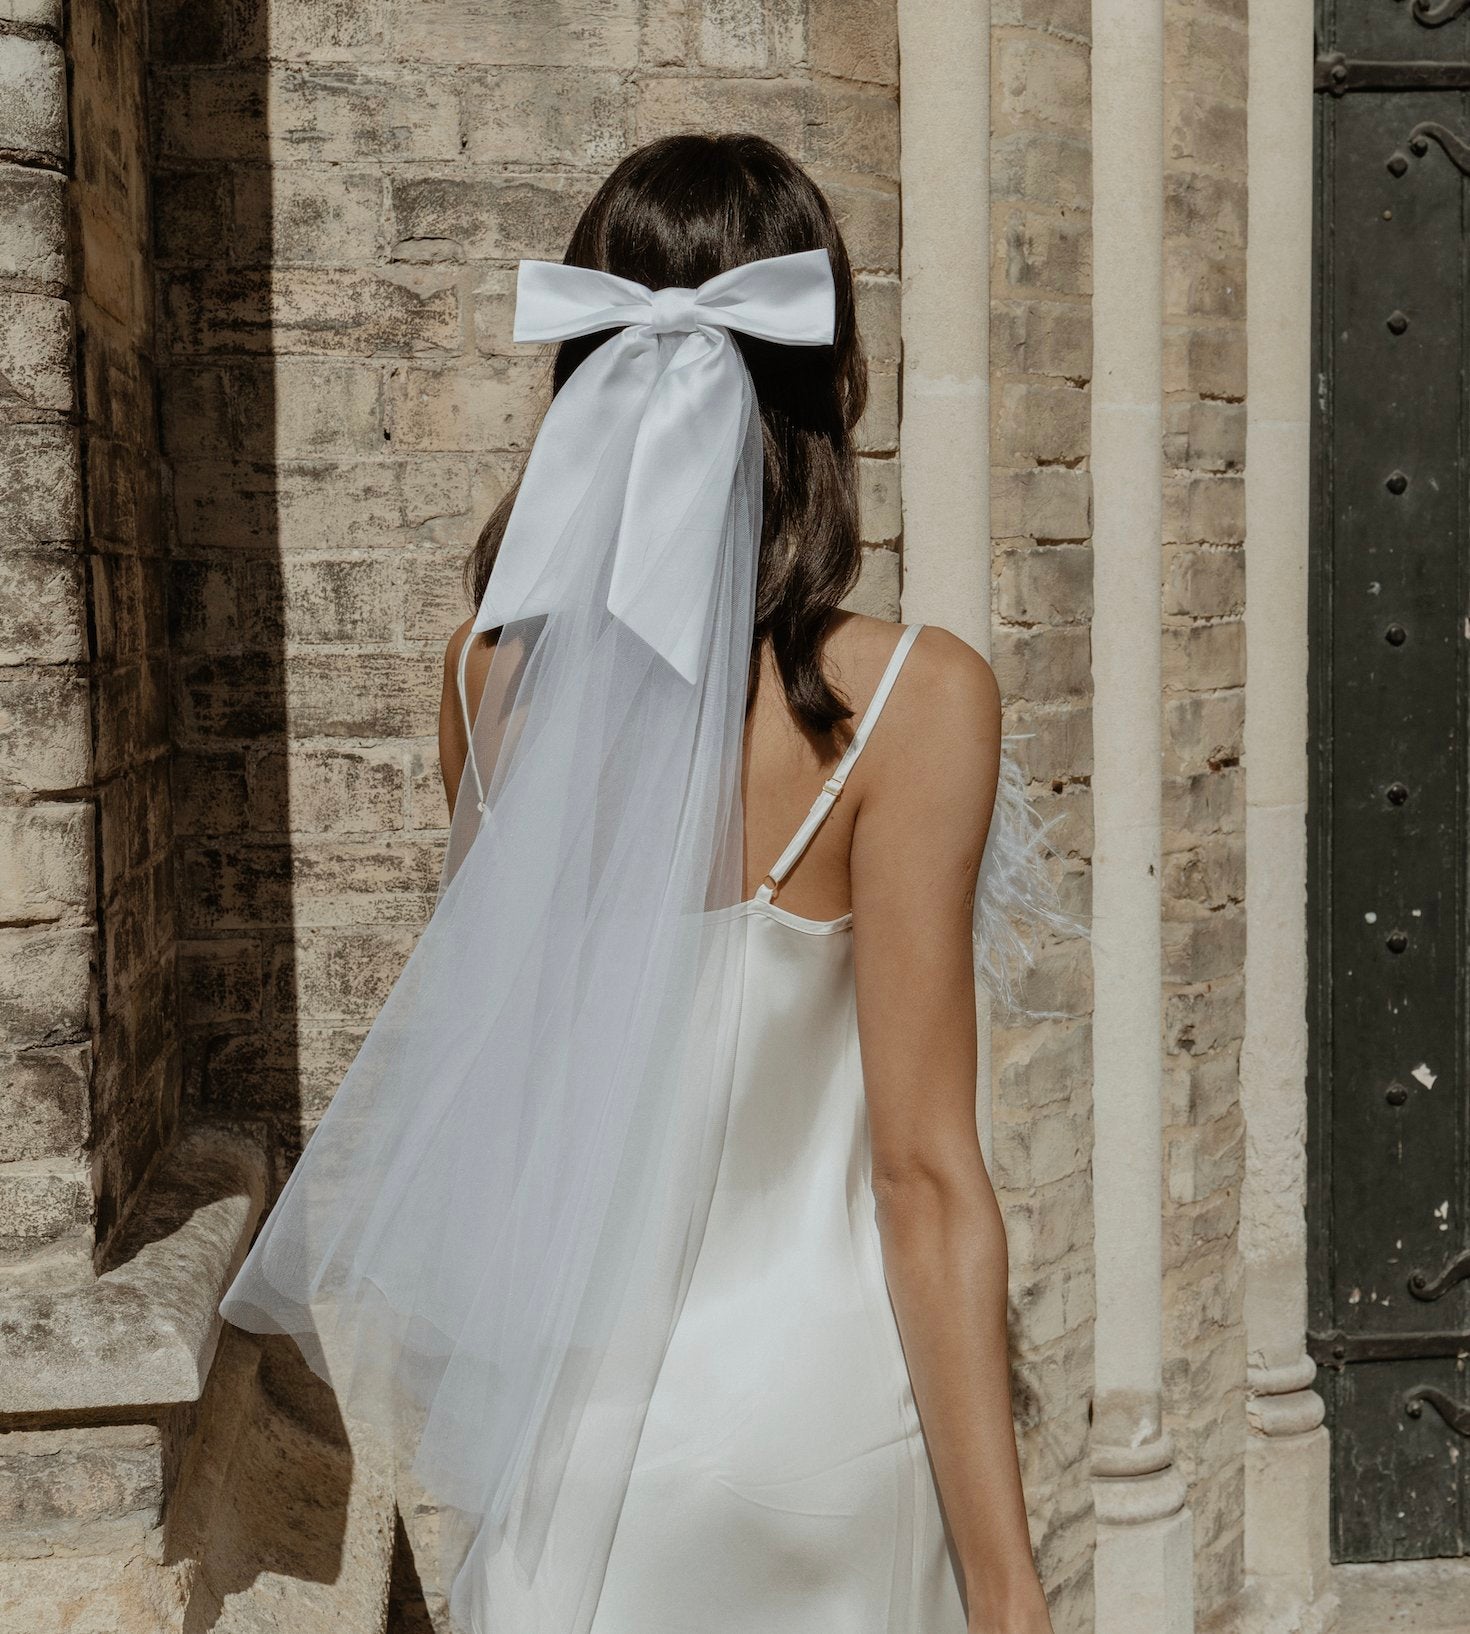 Mini Veil for the Bride